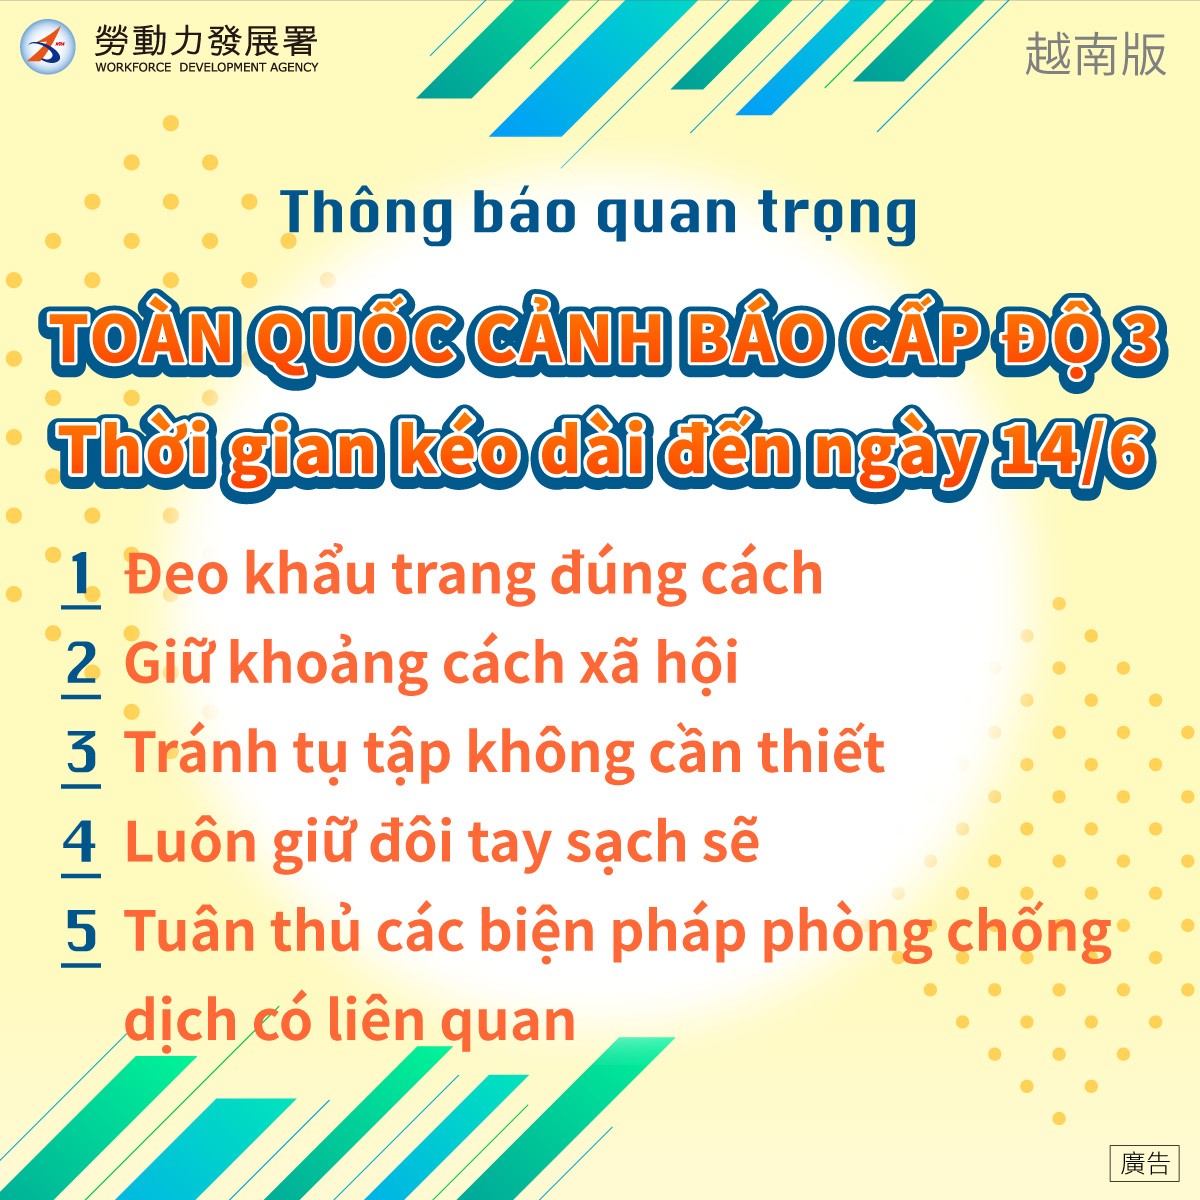 全國第三級警戒延長至6月14日-越南版.jpg